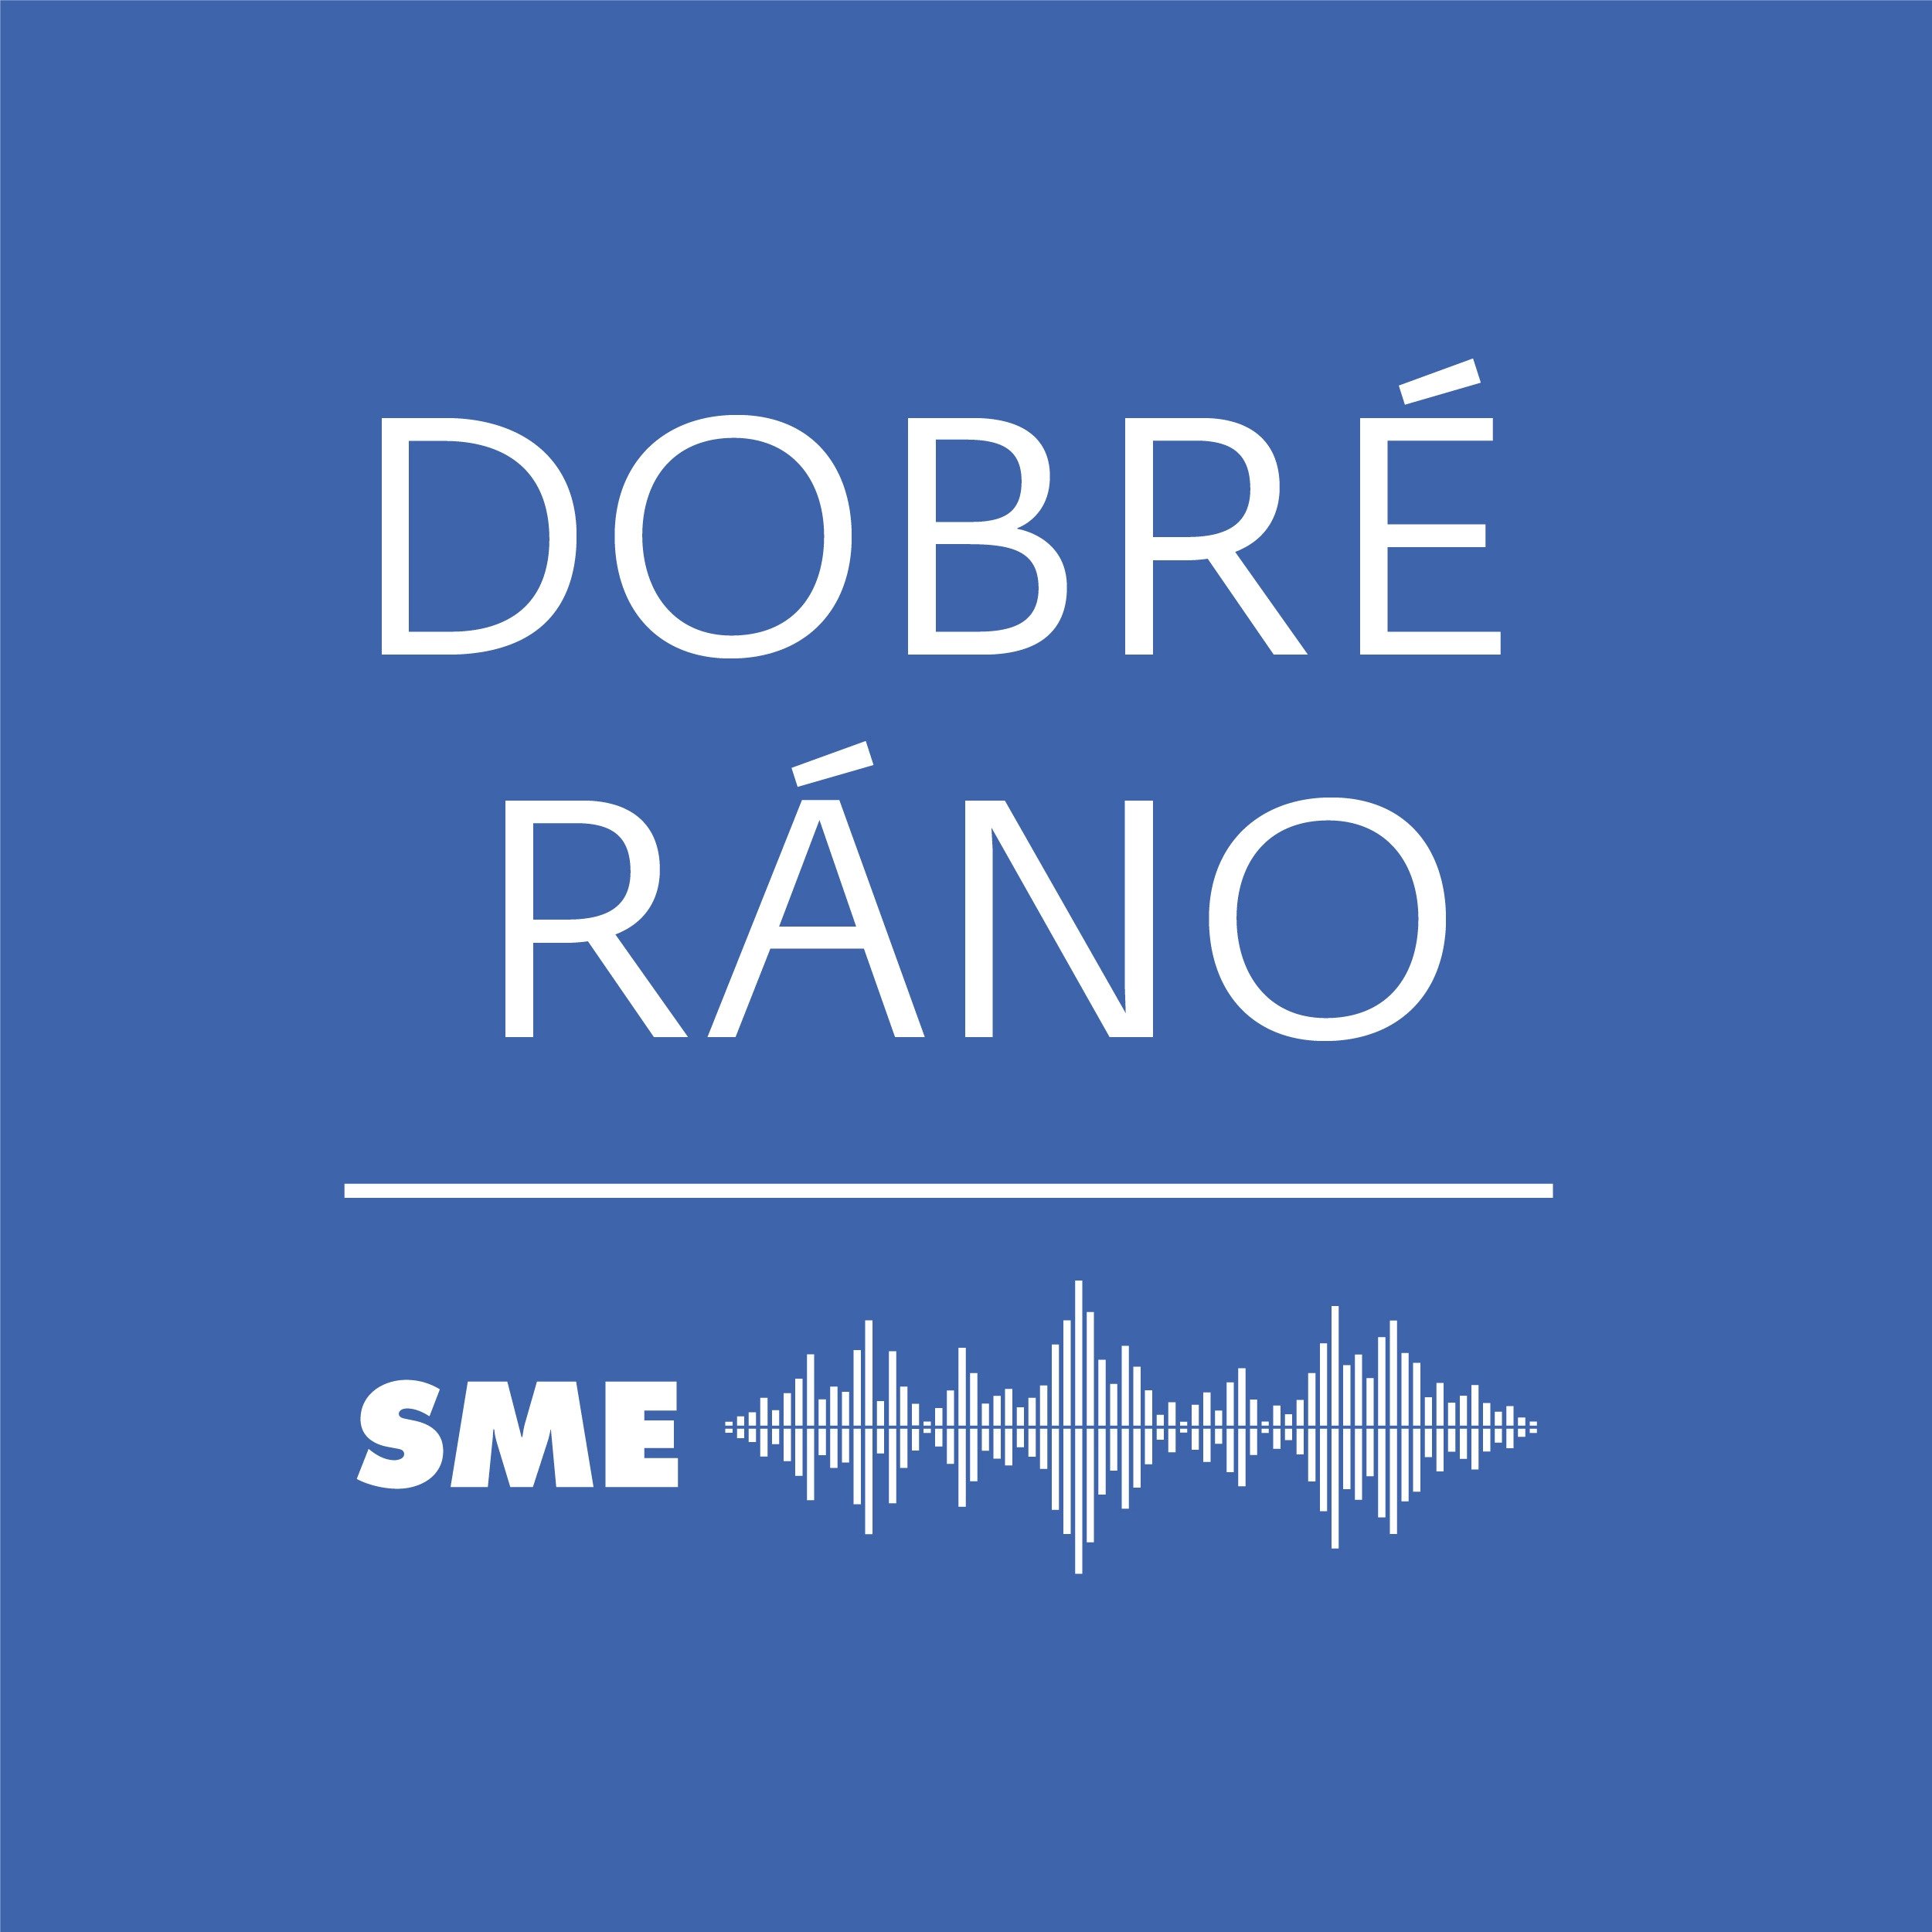 Dobré ráno | Denný podcast denníka SME